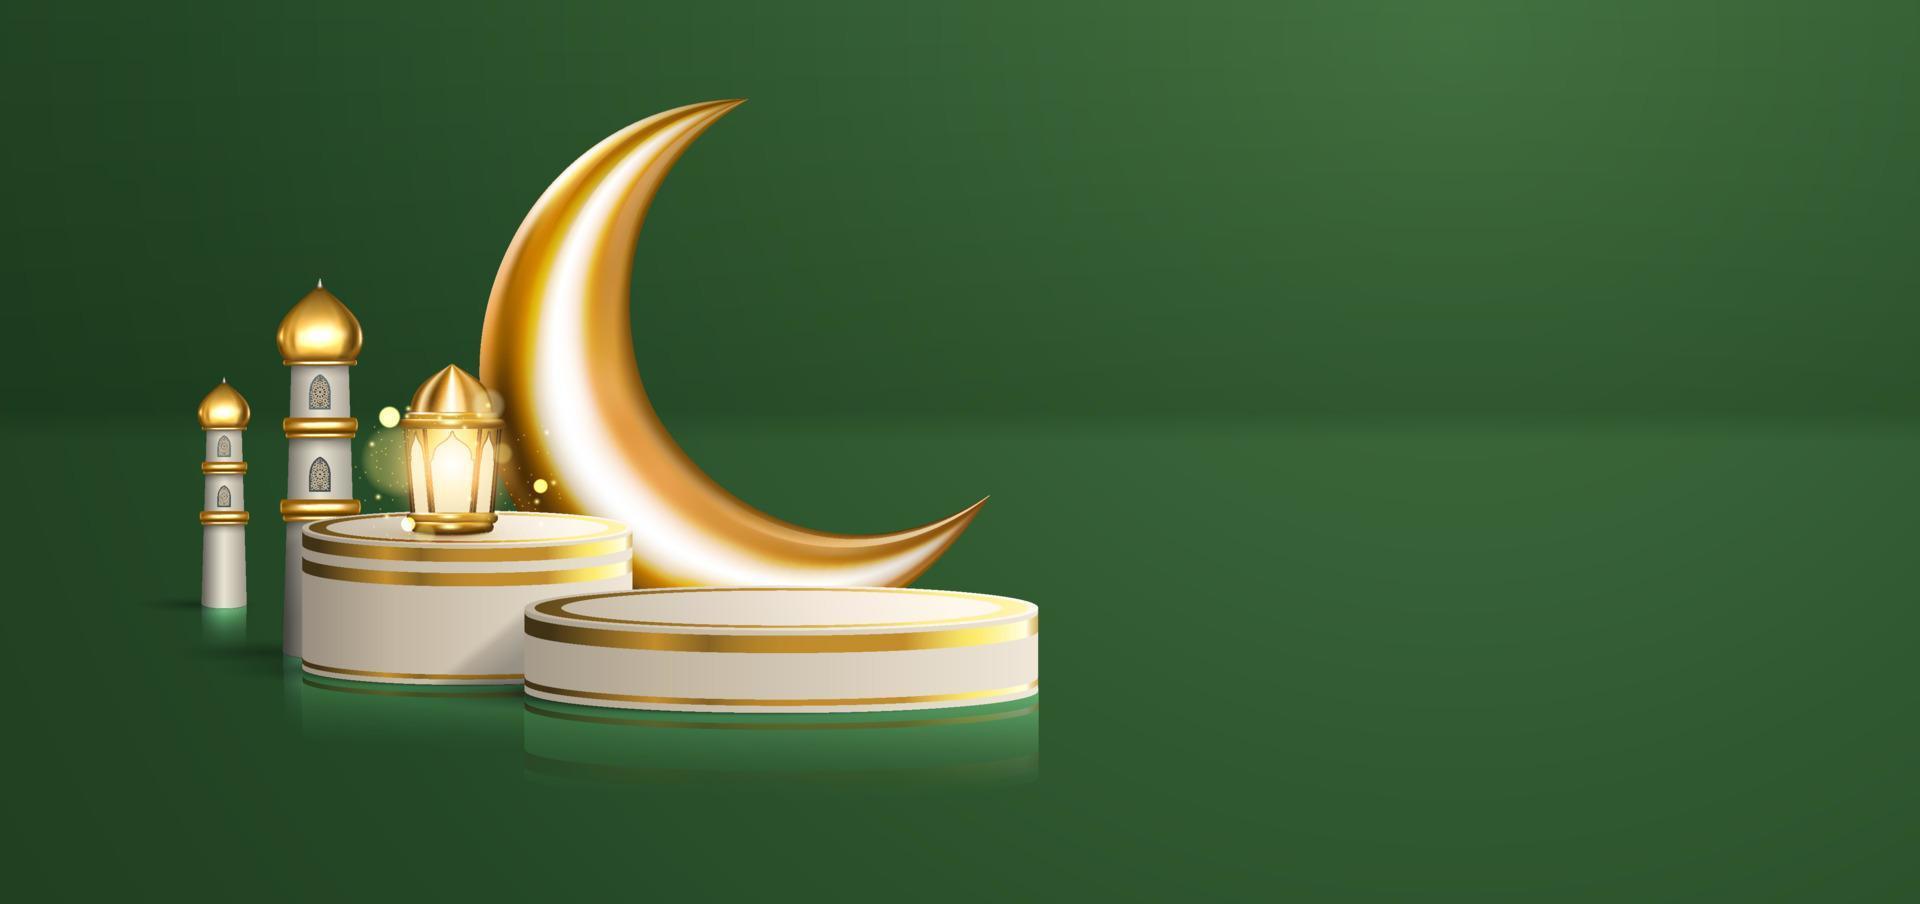 célébration islamique 3d réaliste avec ornement arabe et podium de produit sur fond vert. illustration du ramadan kareem pour la publicité, les ventes, les achats en ligne et le marketing vecteur